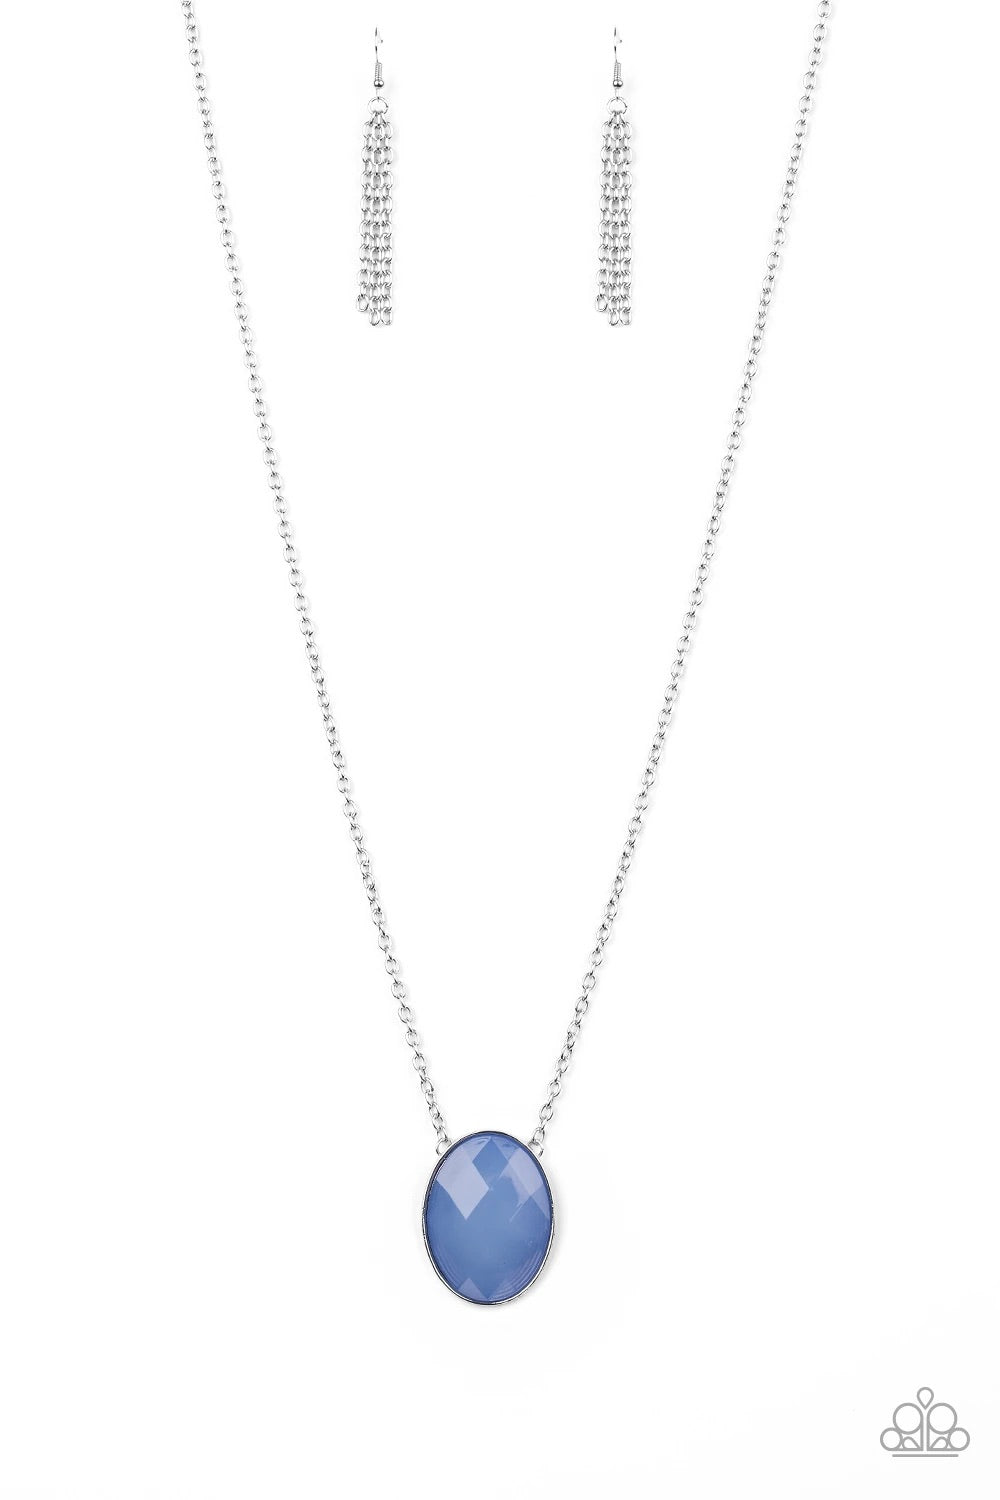 Intensely Illuminated Blue Necklace freeshipping - JewLz4u Gemstone Gallery